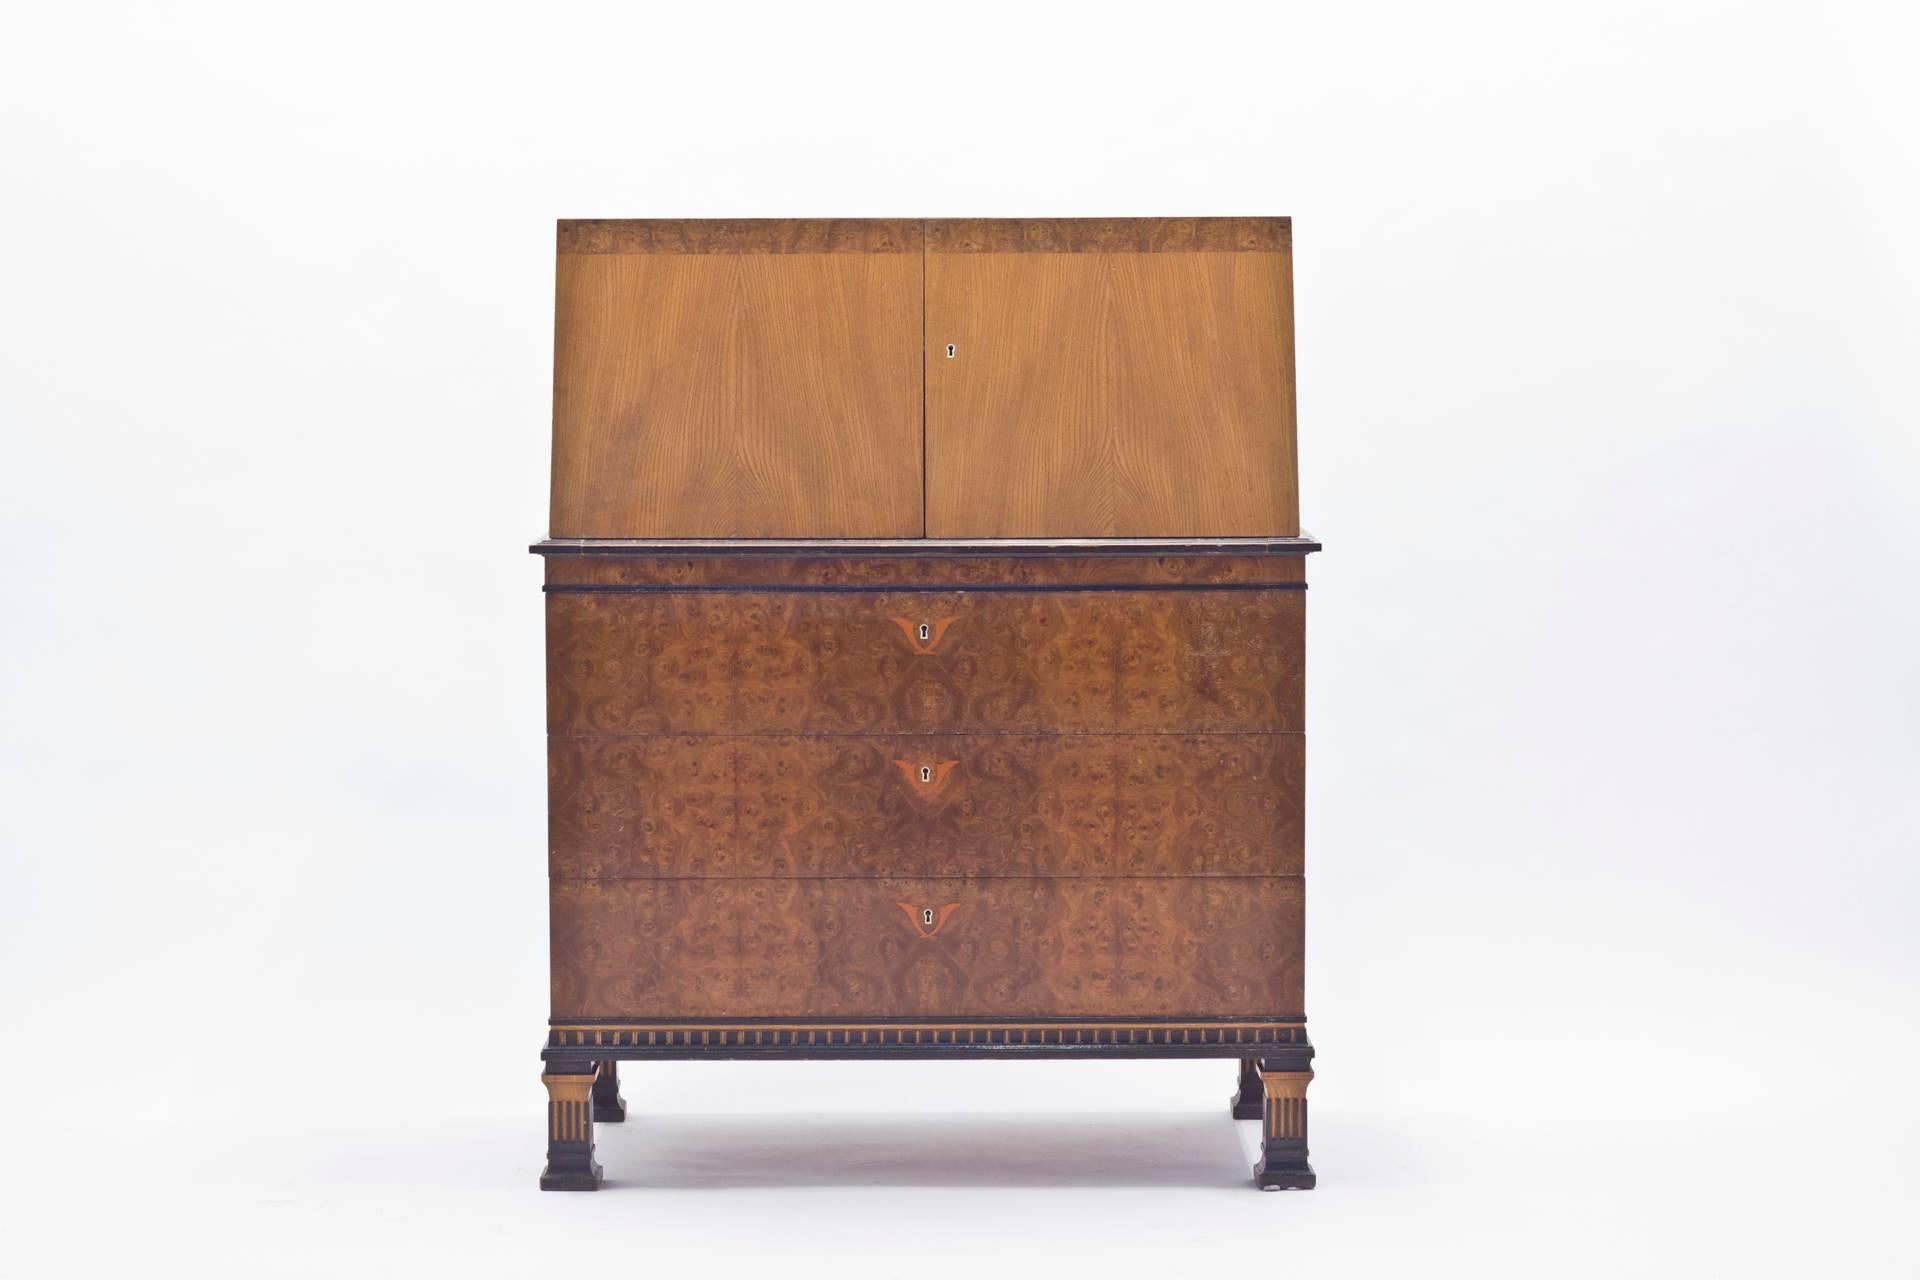 Dieser schwedische Chiffonier wurde in den 1930er Jahren von Erik Chambert für sein Unternehmen Chamberts Möbelfabrik entworfen. Es weist eine sehr hohe handwerkliche Qualität auf, mit einer großen Vielfalt an verschiedenen exotischen Holzeinlagen.